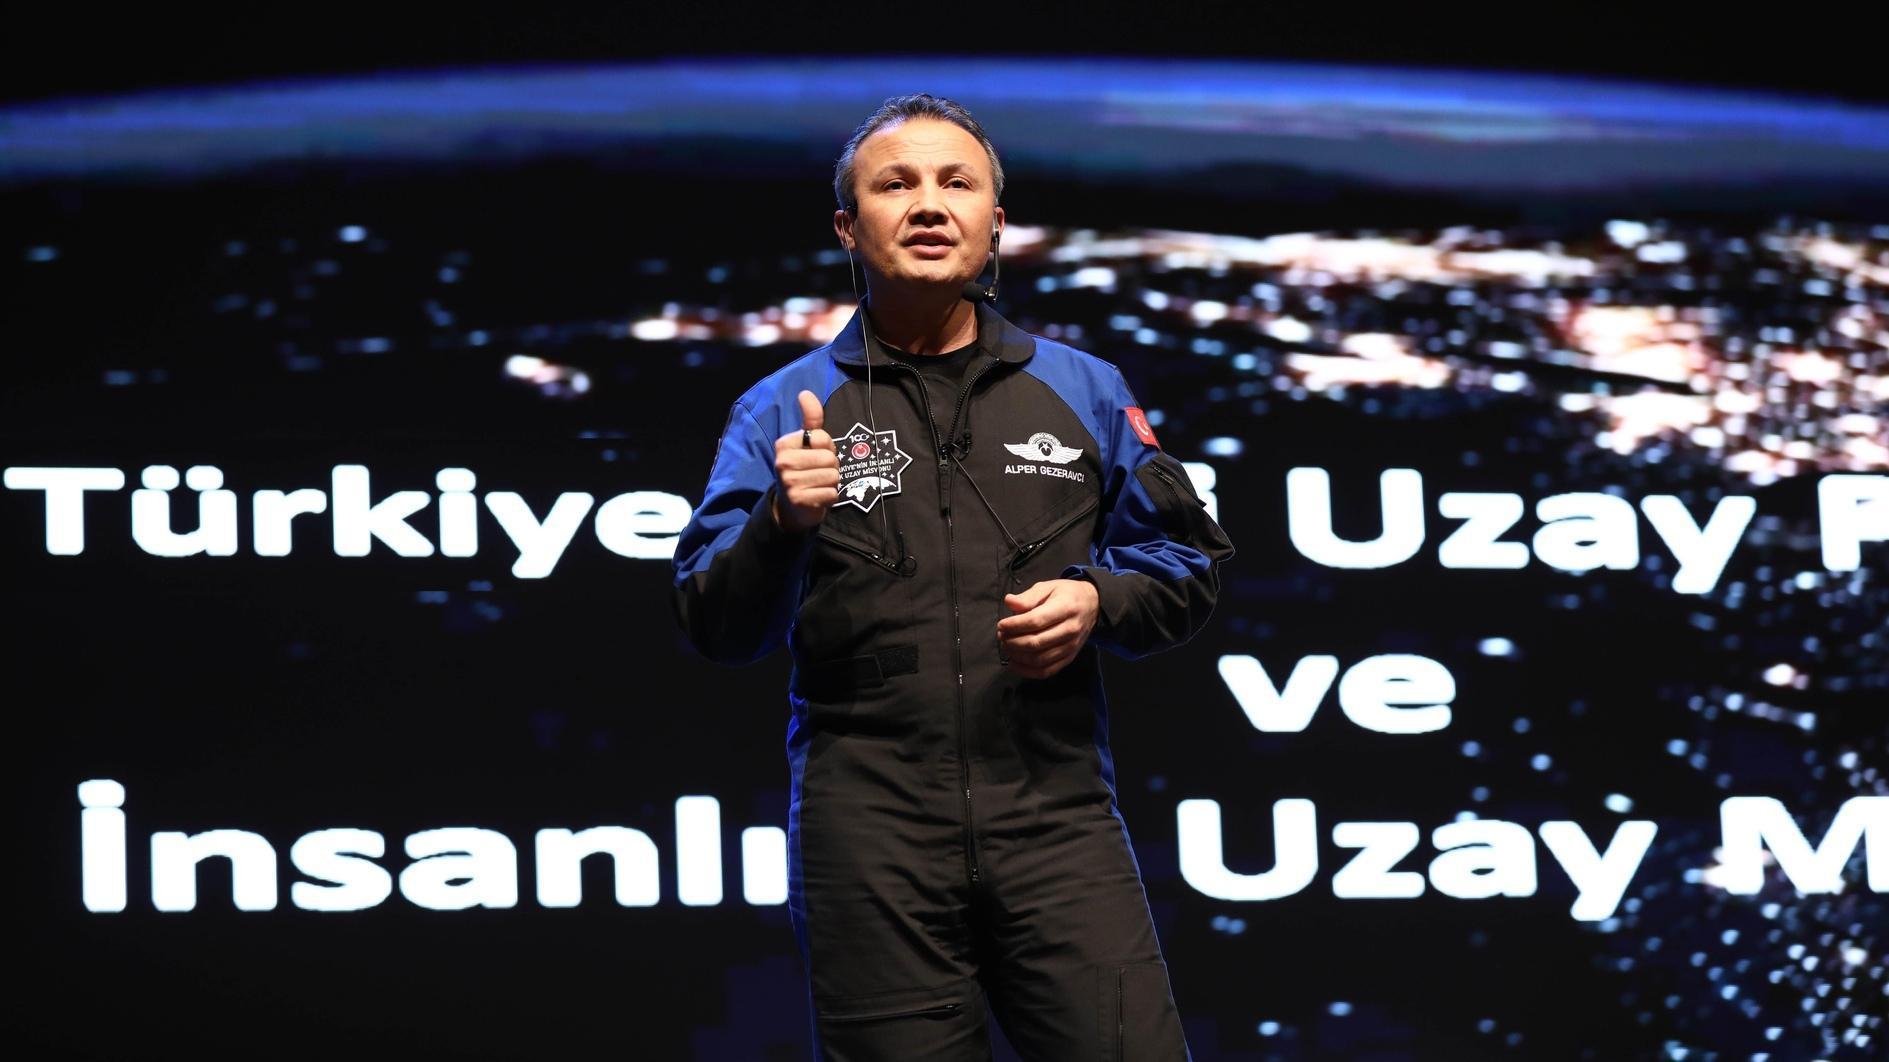 Türkiyes eerste astronaut Gezeravcı die lesgeeft aan İTÜ